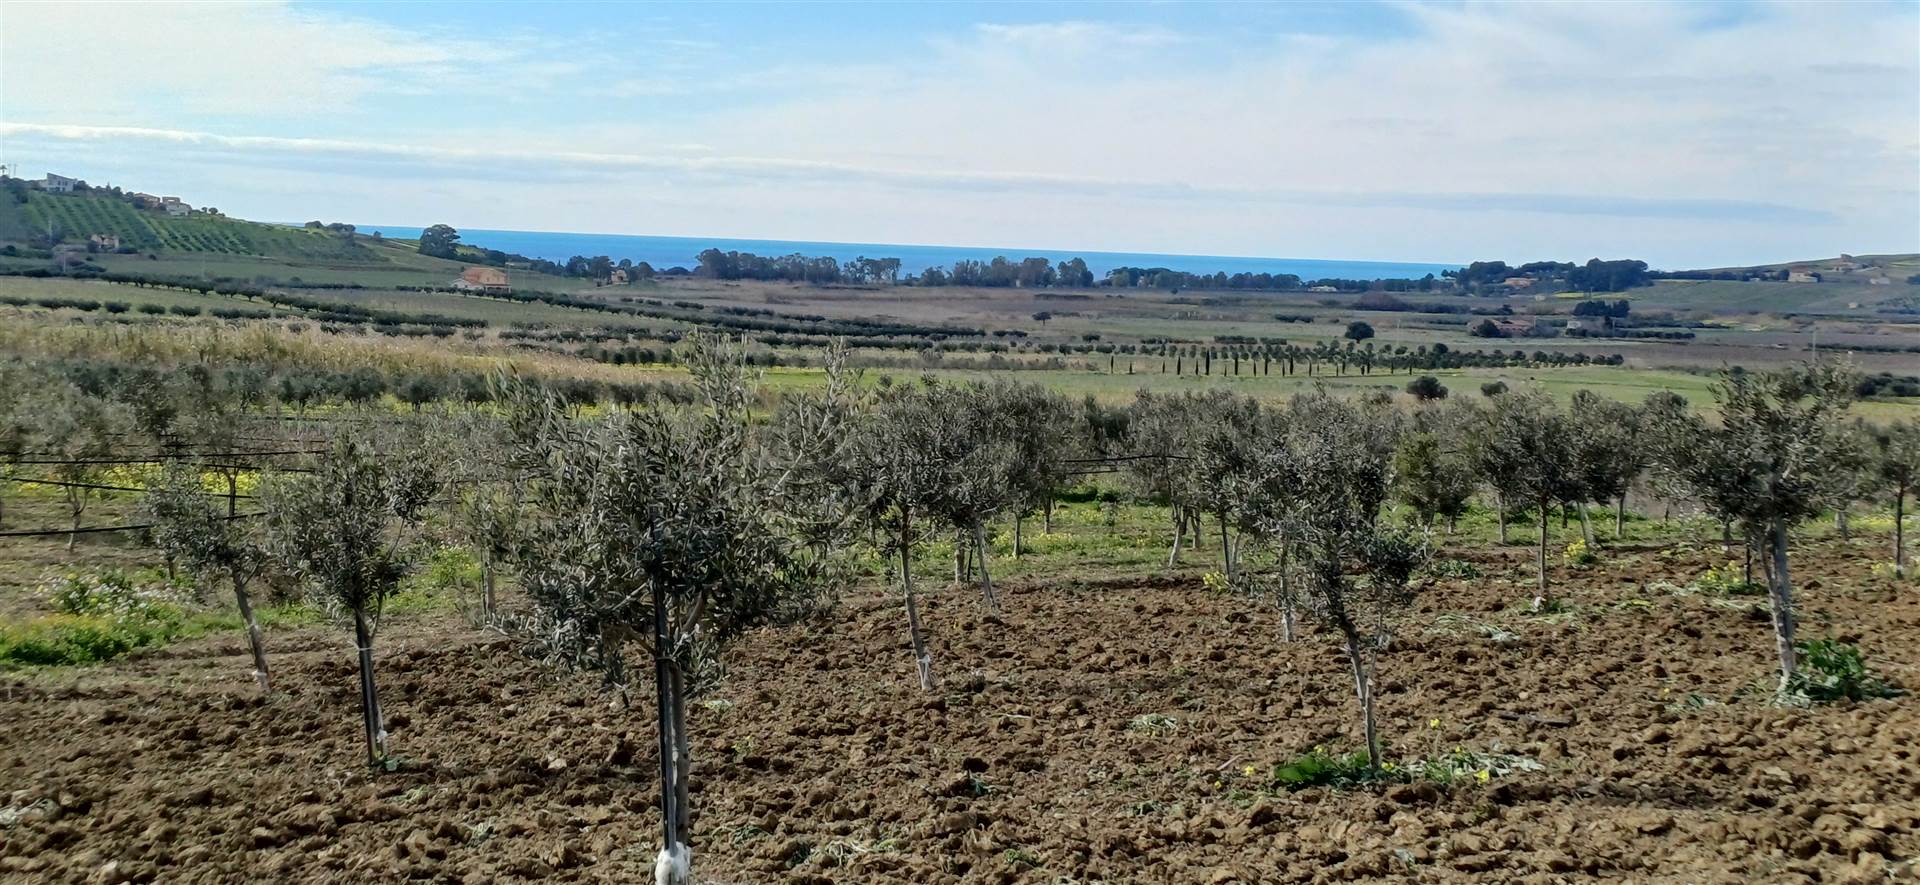 Terreno Agricolo in vendita a Sciacca, 9999 locali, prezzo € 45.000 | PortaleAgenzieImmobiliari.it